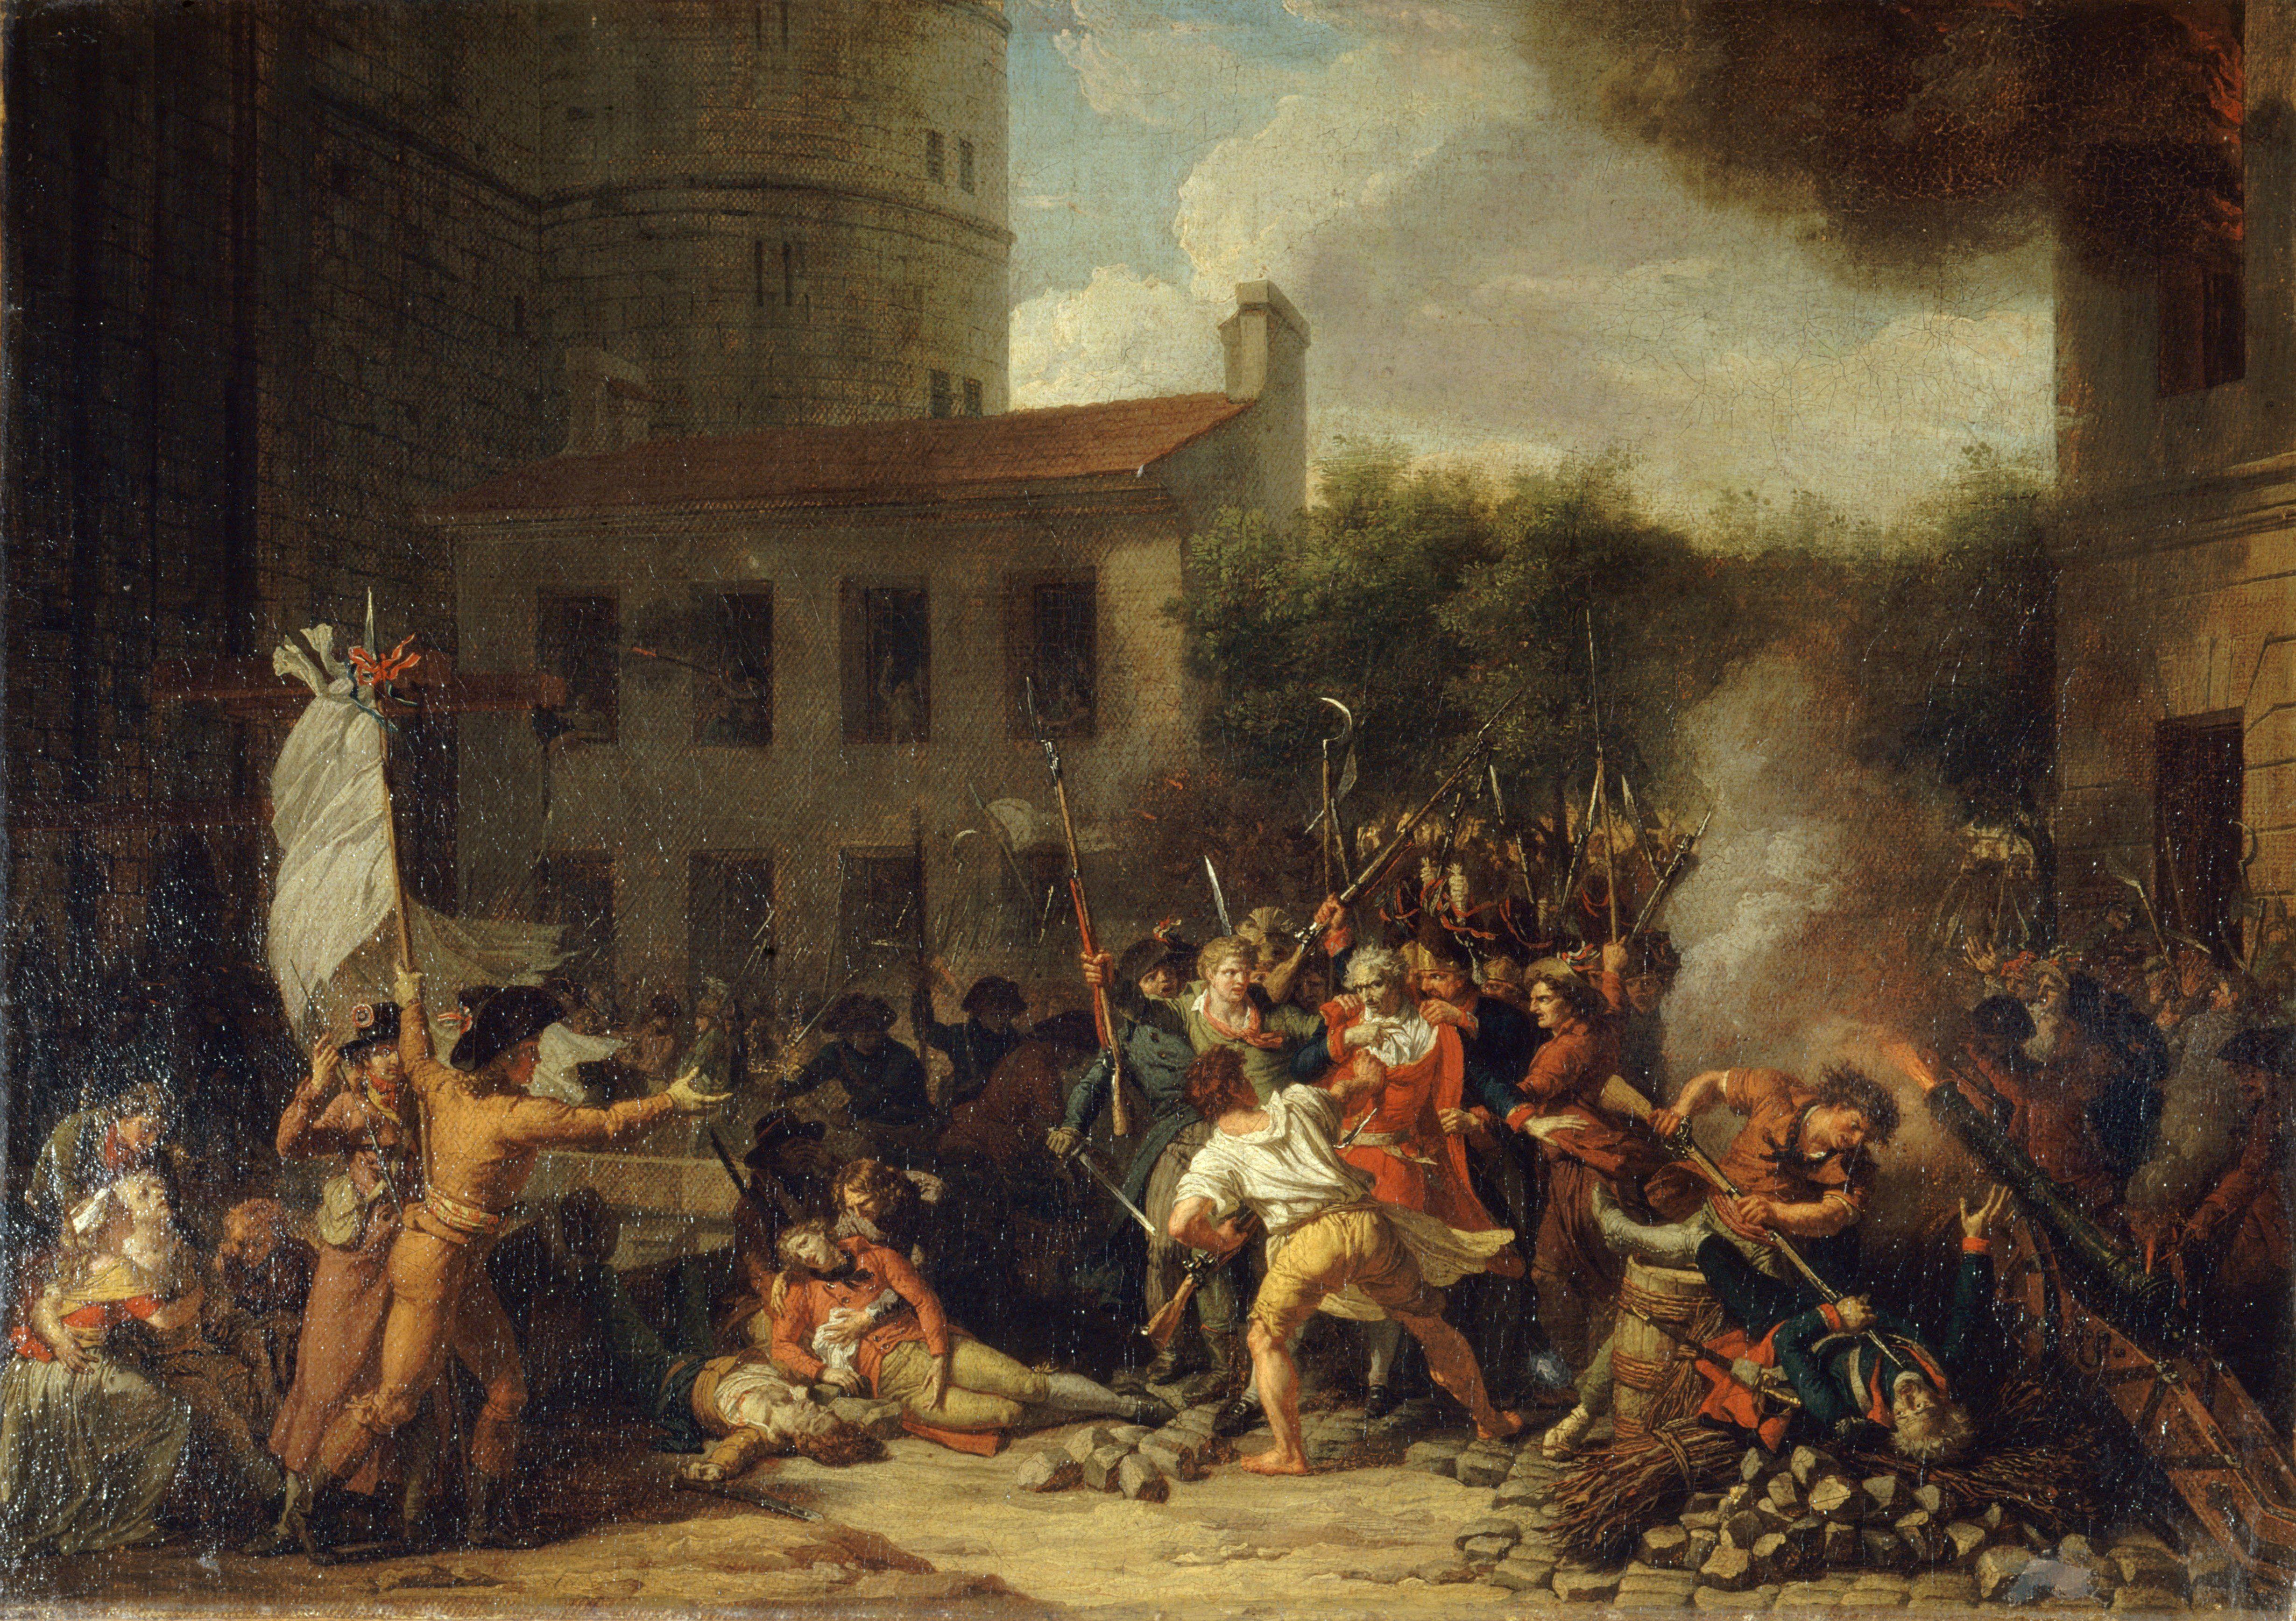 Pintura representativa de la toma de la Bastilla del 14 de julio de 1789.